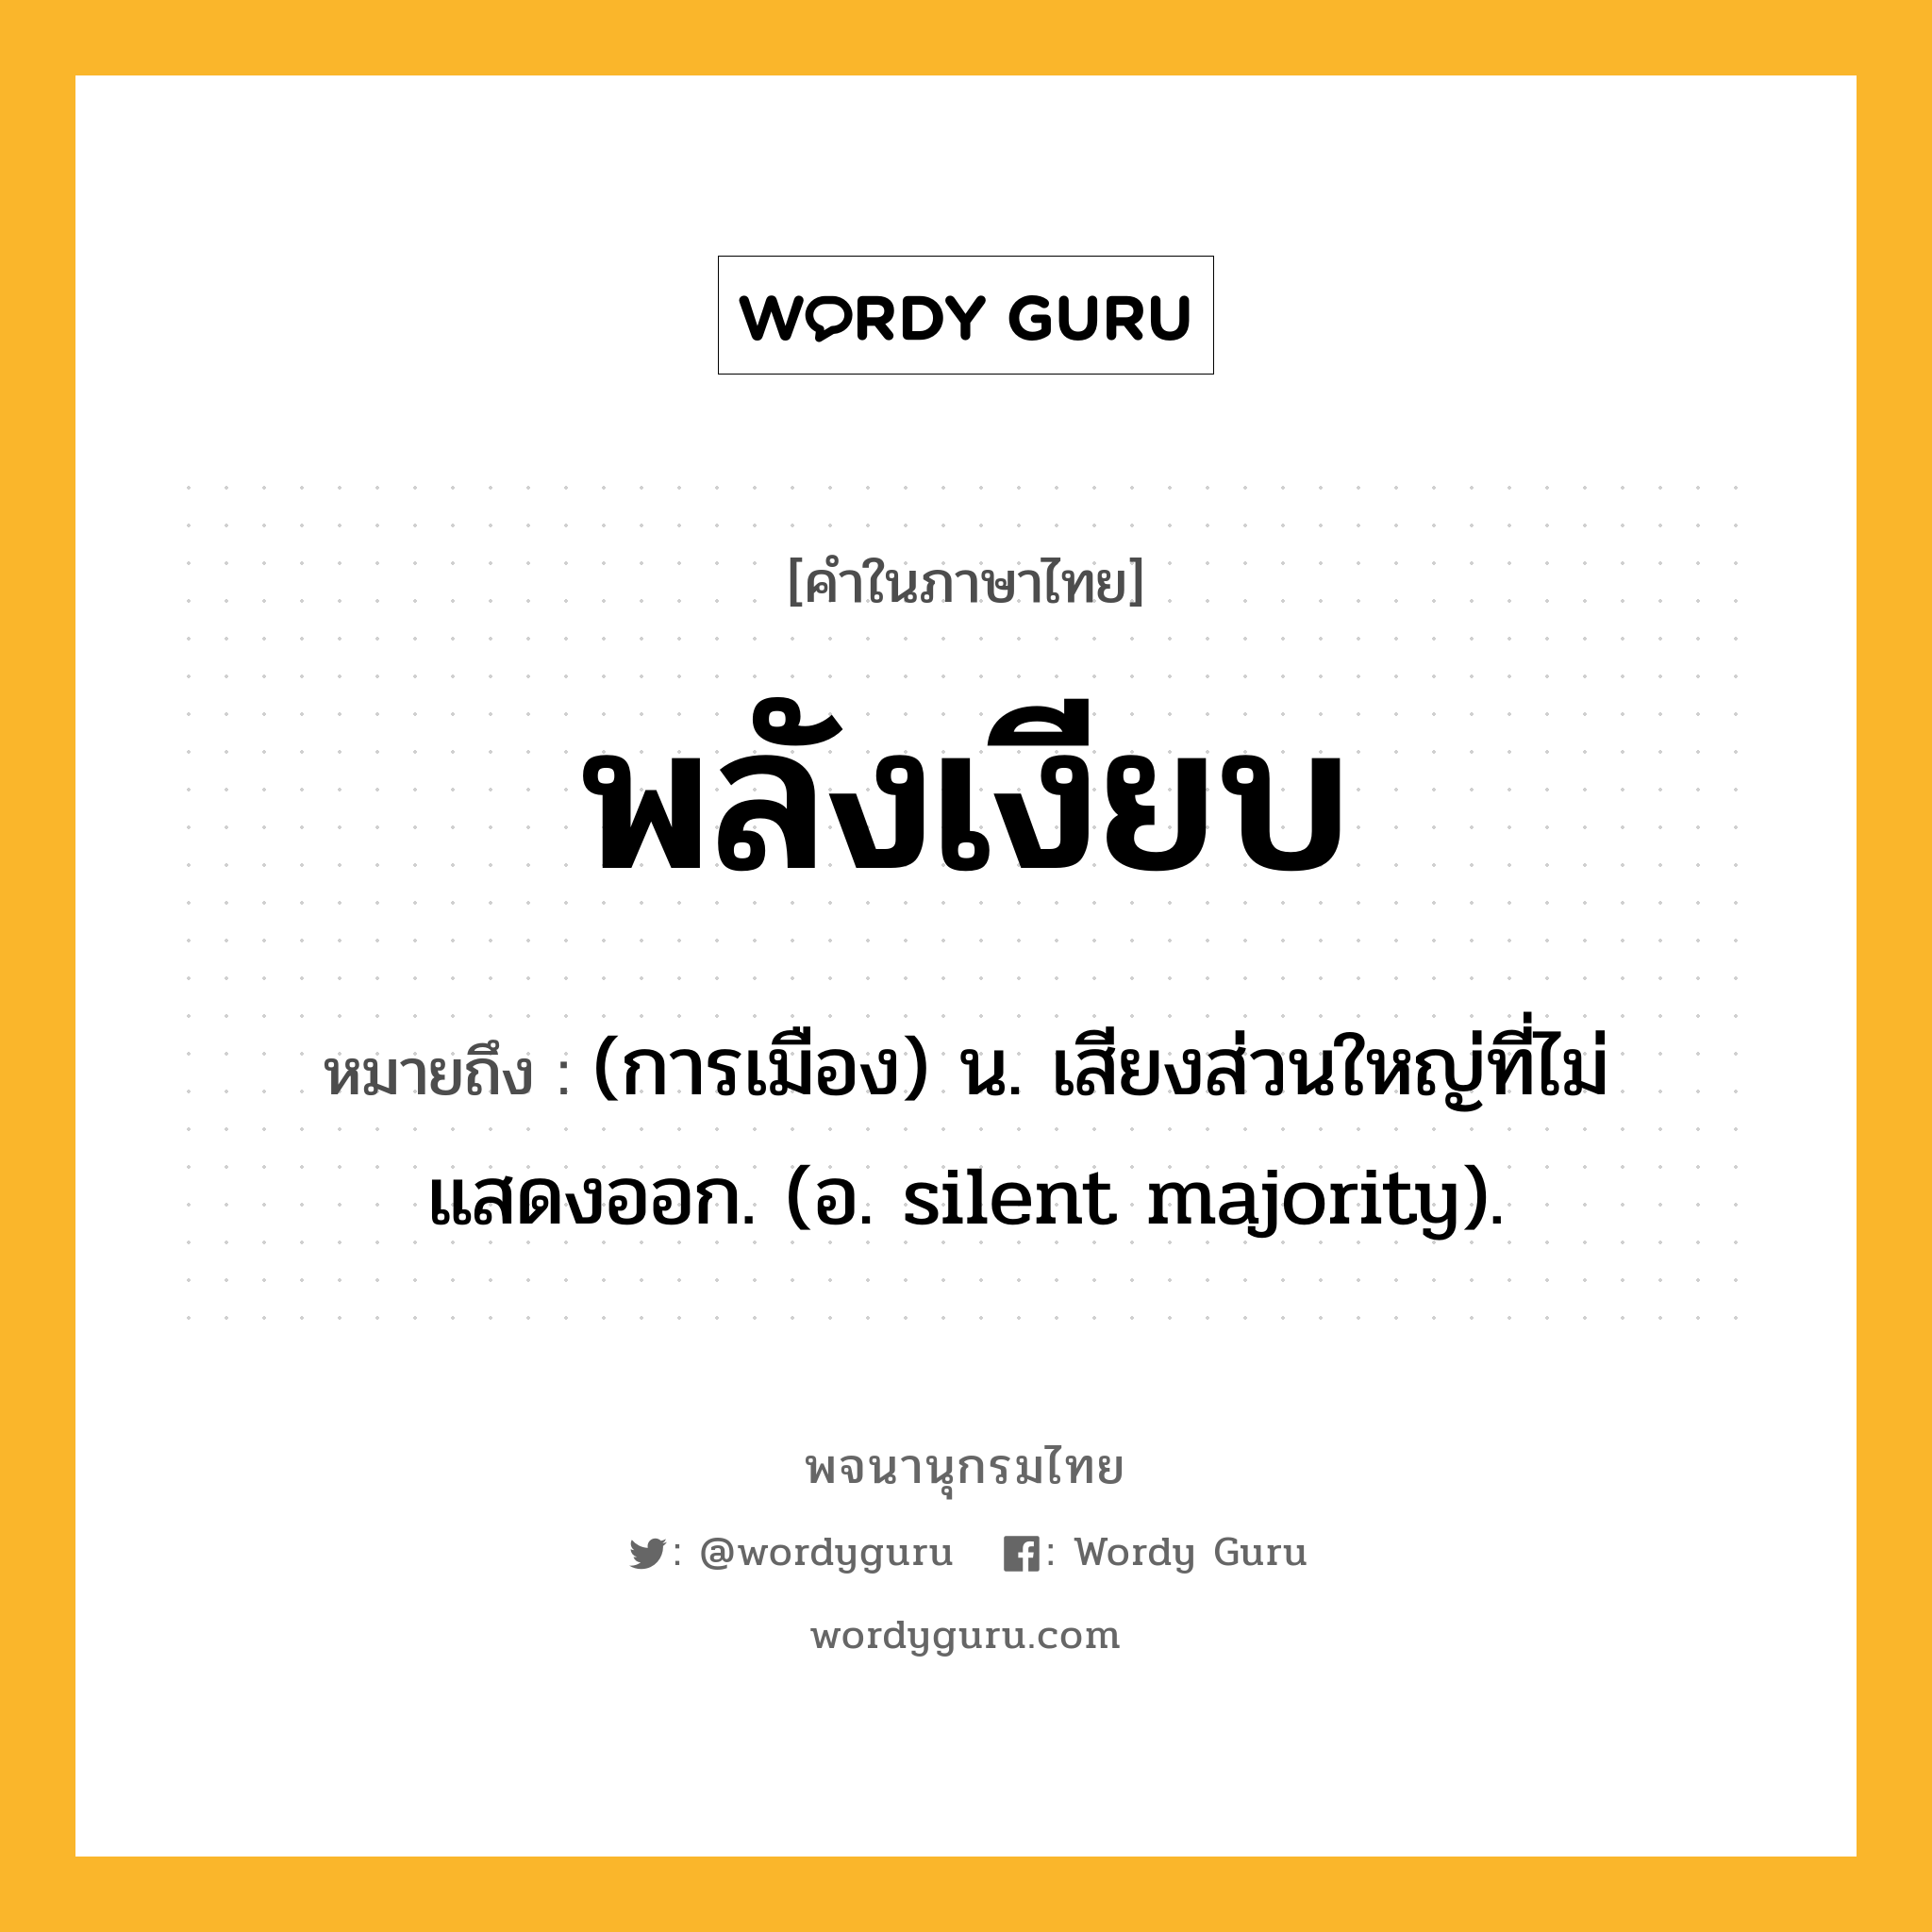 พลังเงียบ หมายถึงอะไร?, คำในภาษาไทย พลังเงียบ หมายถึง (การเมือง) น. เสียงส่วนใหญ่ที่ไม่แสดงออก. (อ. silent majority).